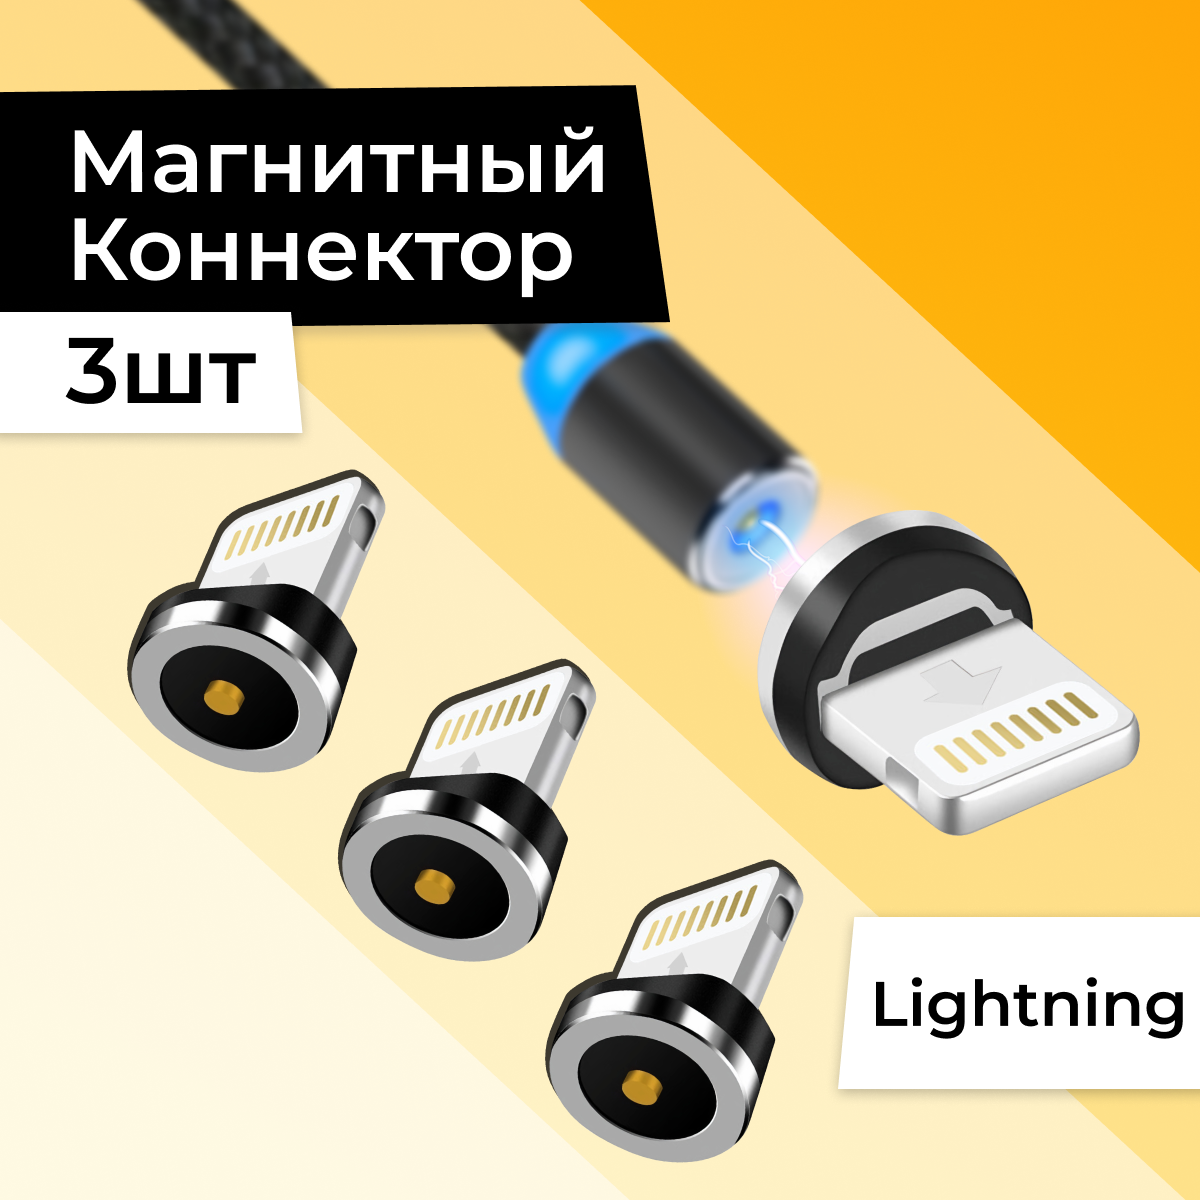 Комплект 3 шт. Магнитный Lightning коннектор для Apple iPhone AirPods / Сменный наконечник Лайтнинг для зарядки Эпл Айфон Аирподс Айпад / Черный